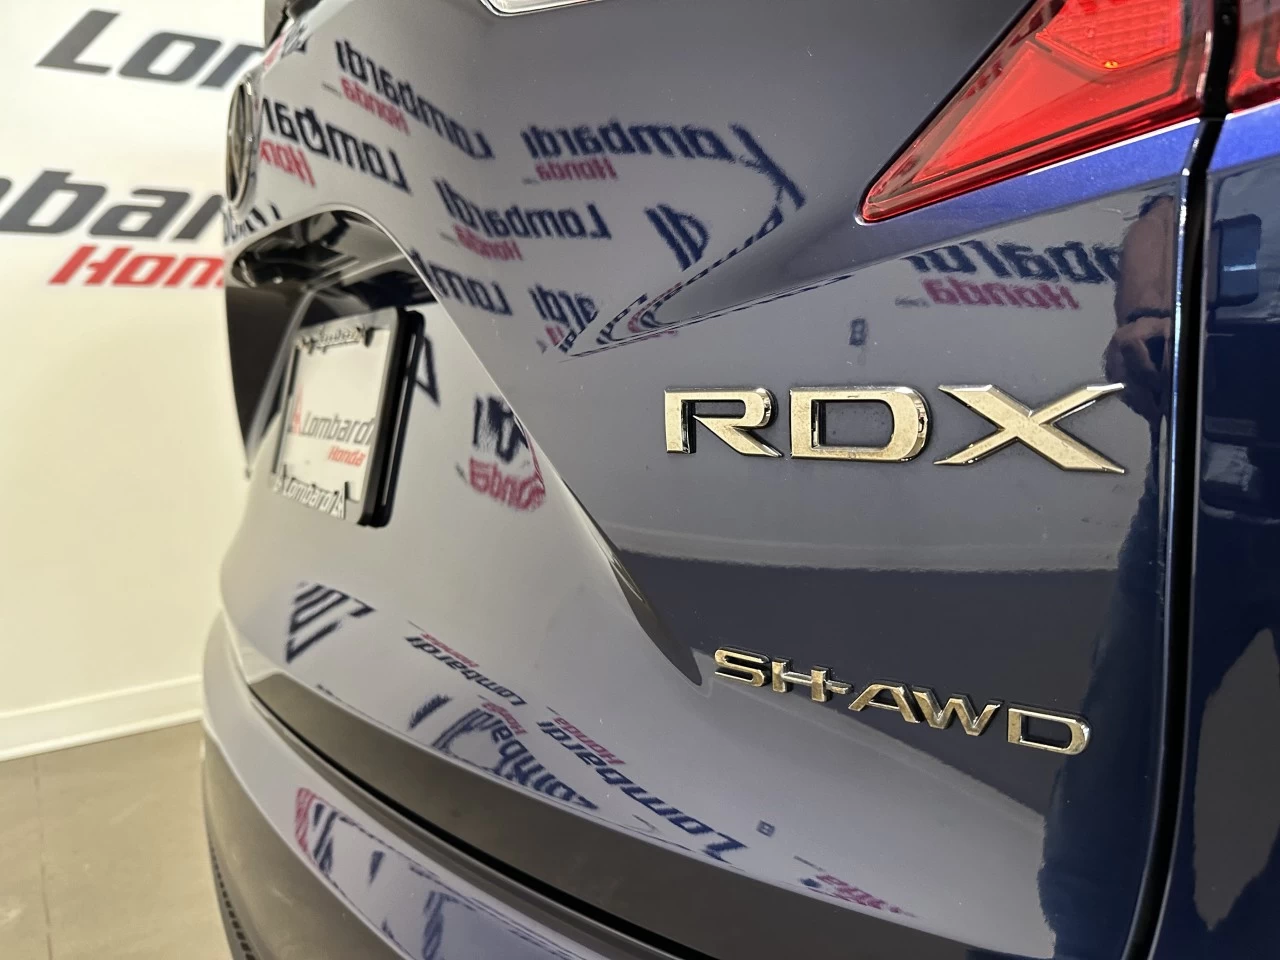 2021 Acura RDX
                                                    Platinum Elite/PMC Edition Main Image